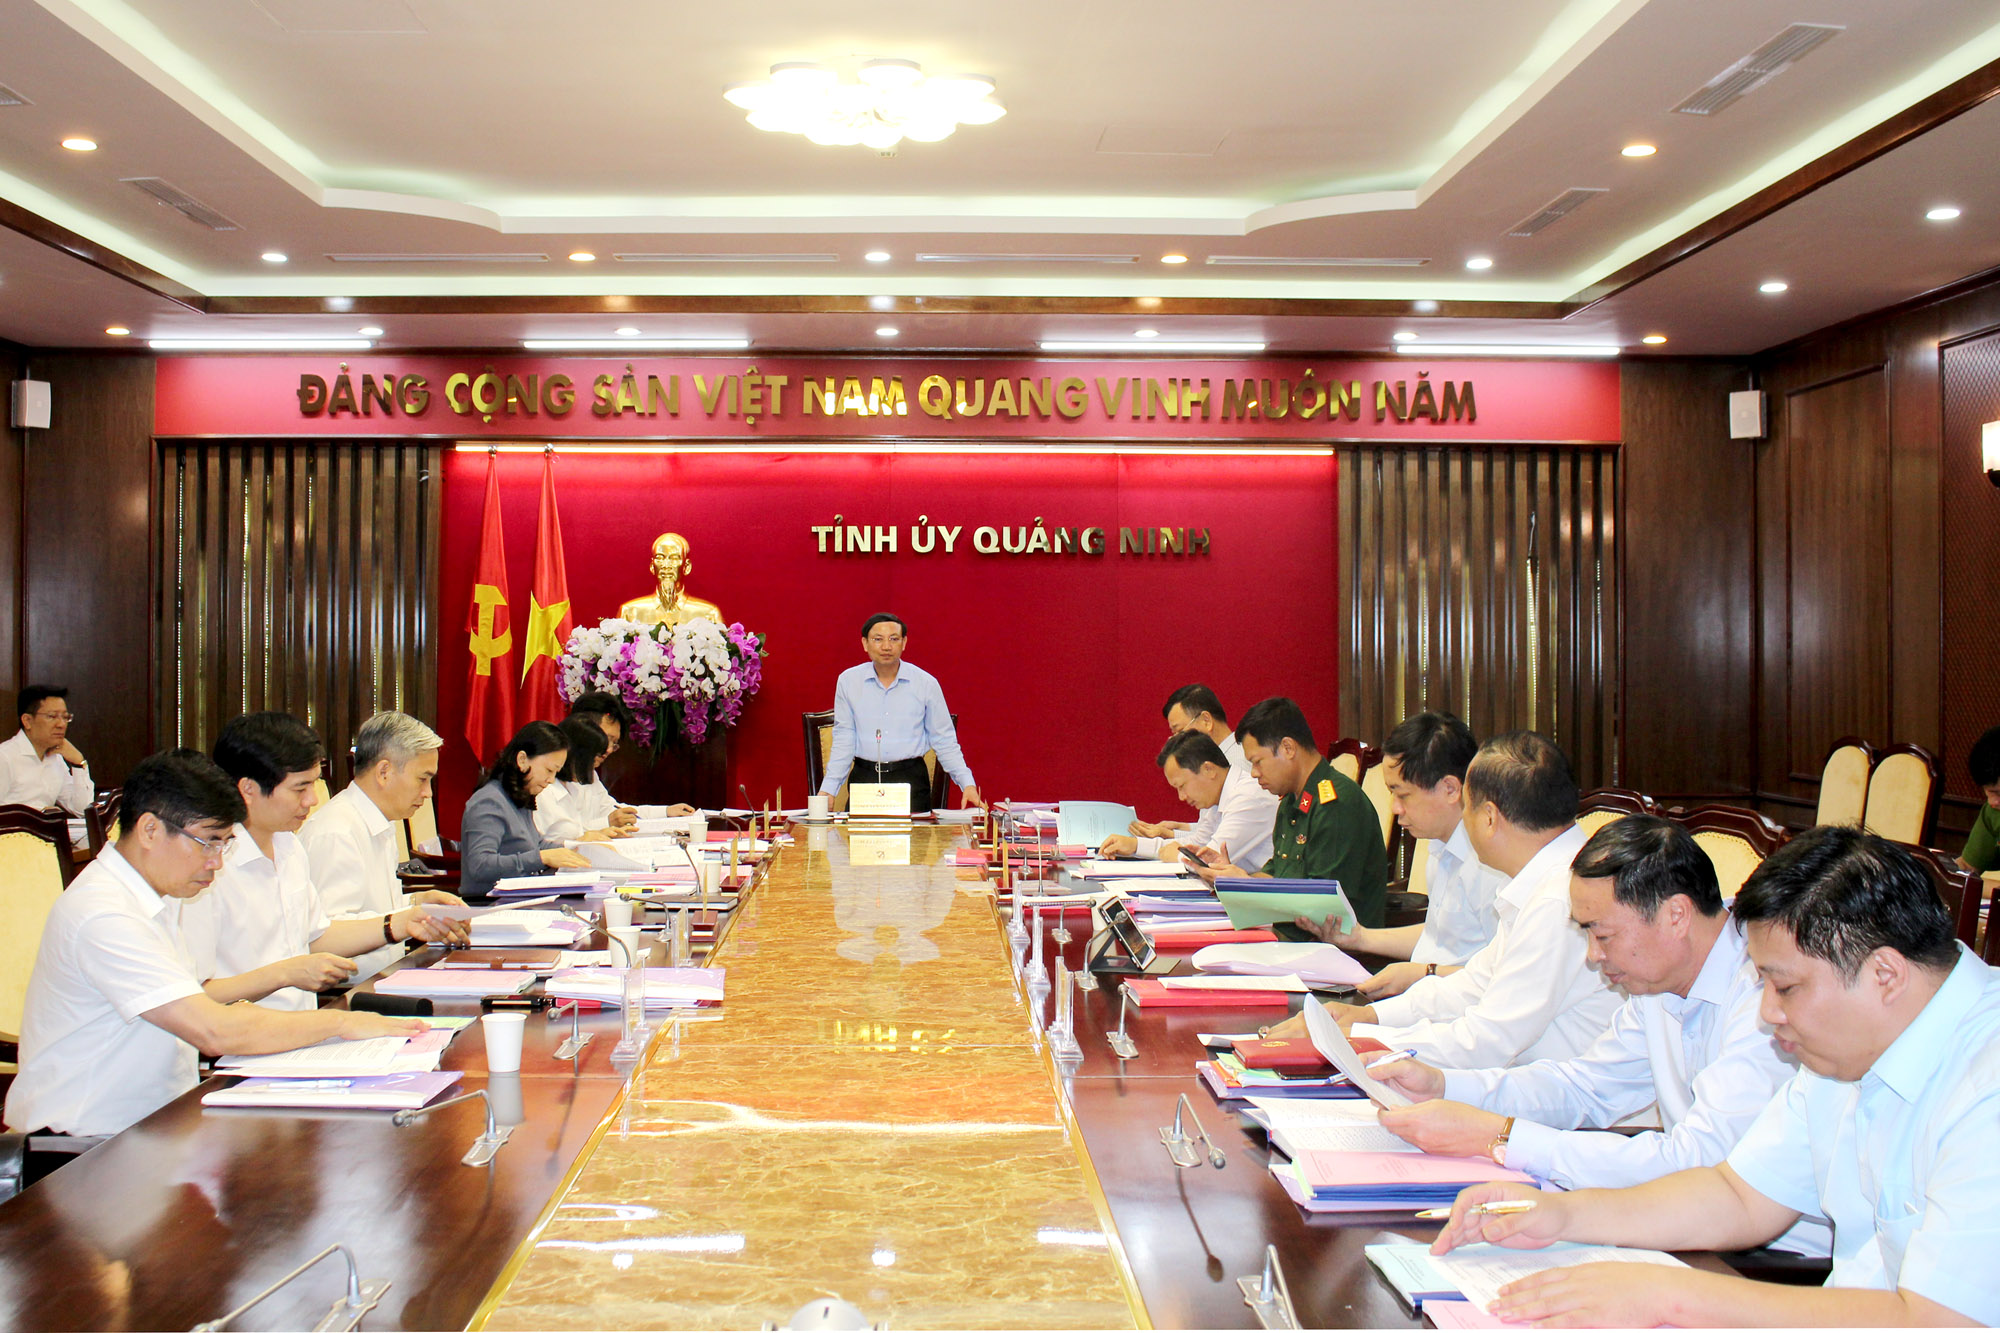 Đồng chí Nguyễn Xuân Ký, Bí thư Tỉnh ủy, Chủ tịch HĐND tỉnh, kết luận buổi làm việc với Ban Thường vụ Huyện ủy Ba Chẽ.